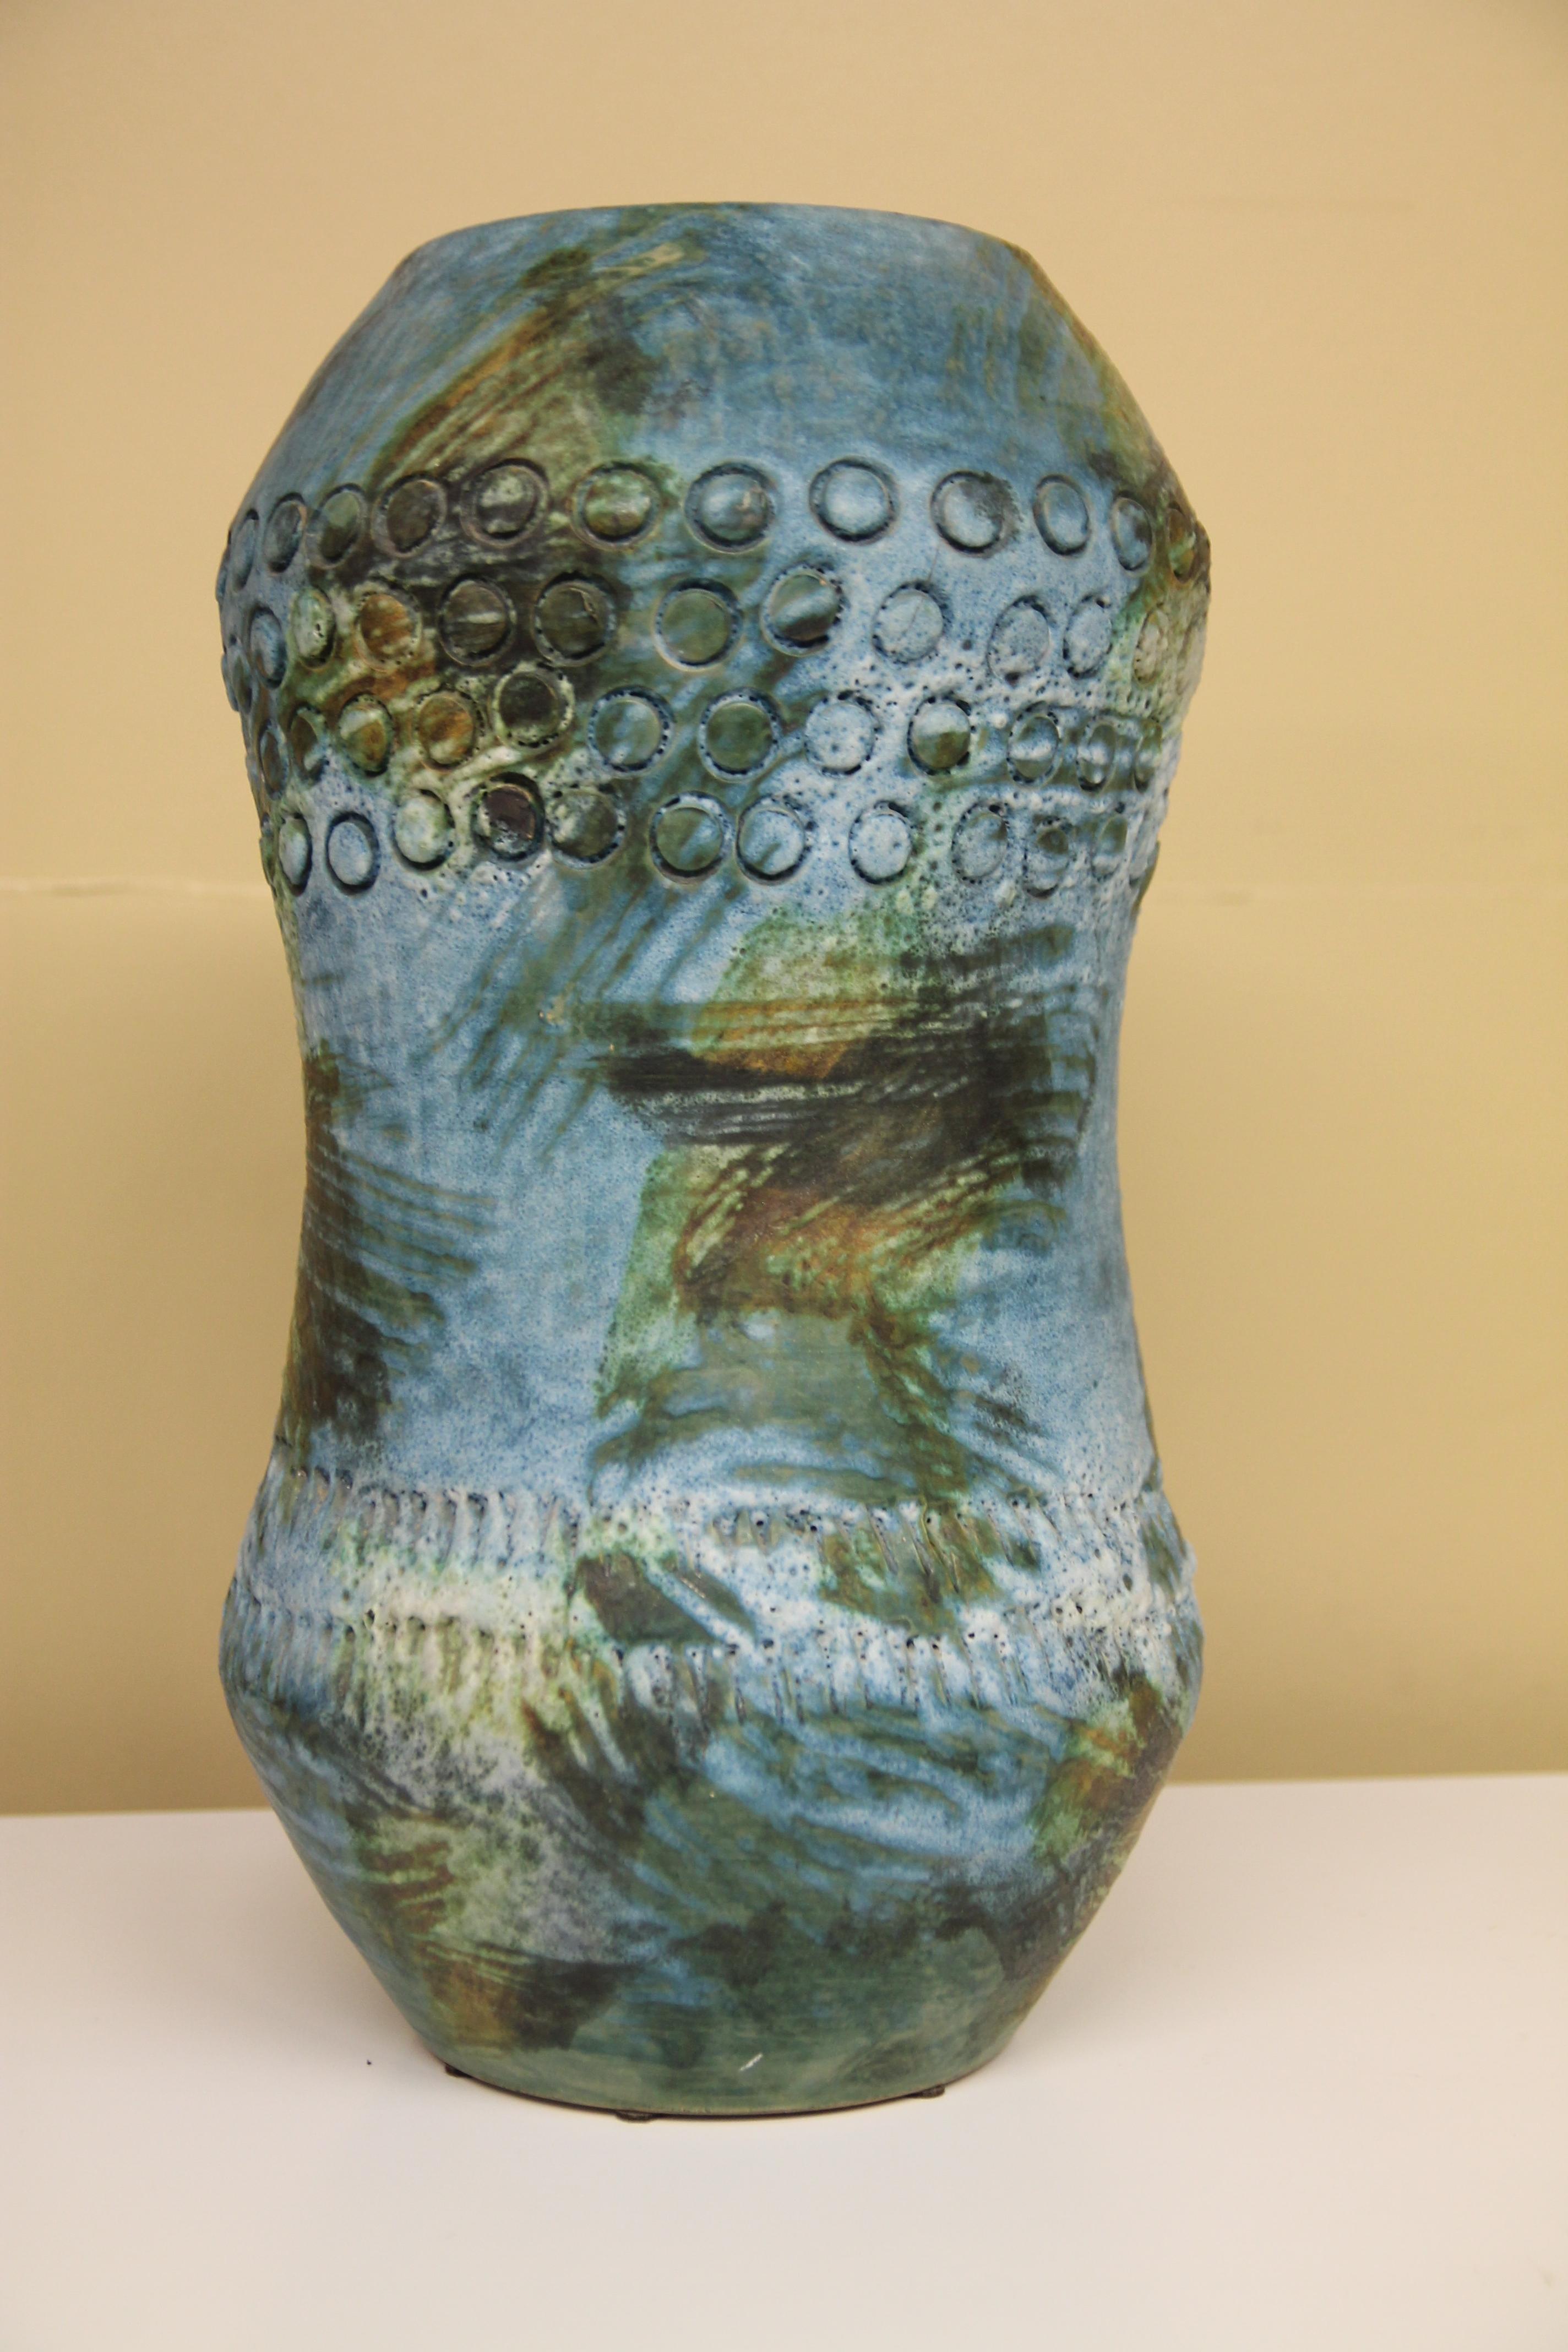 Rarement vu, un vase de cette taille par Alvino Bagni pour Raymor. Ce vase de 17 pouces de haut provient de la ligne 